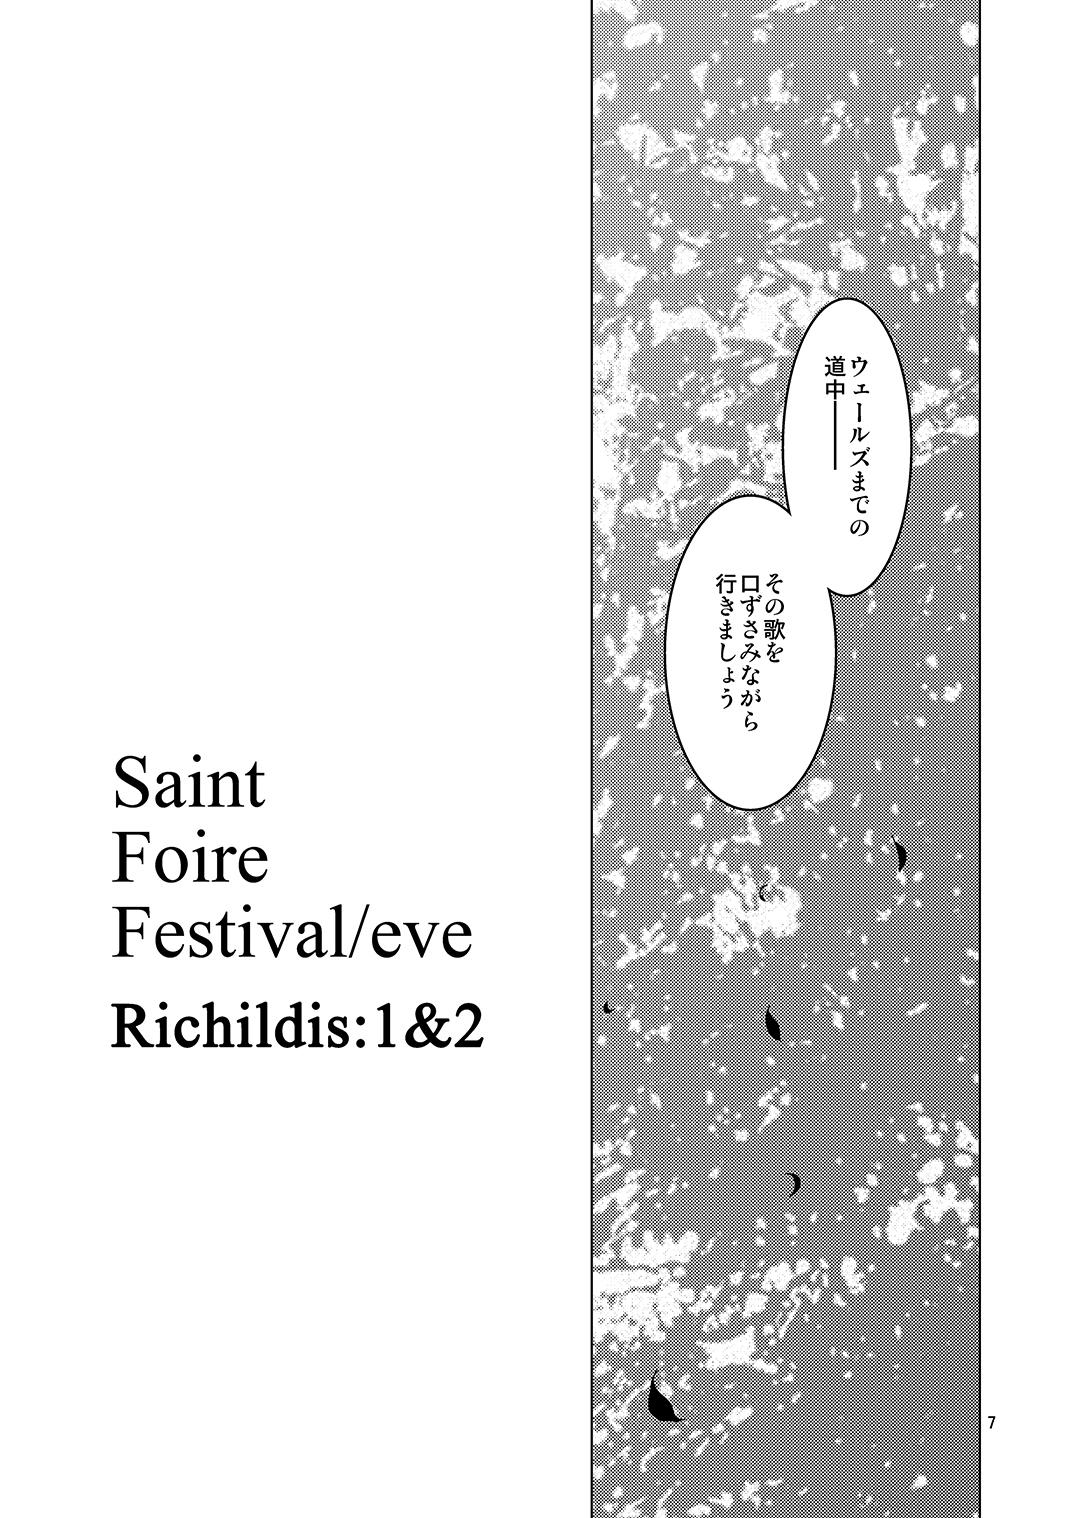 Saint Foire Festival Eve Richilds:1&2 5